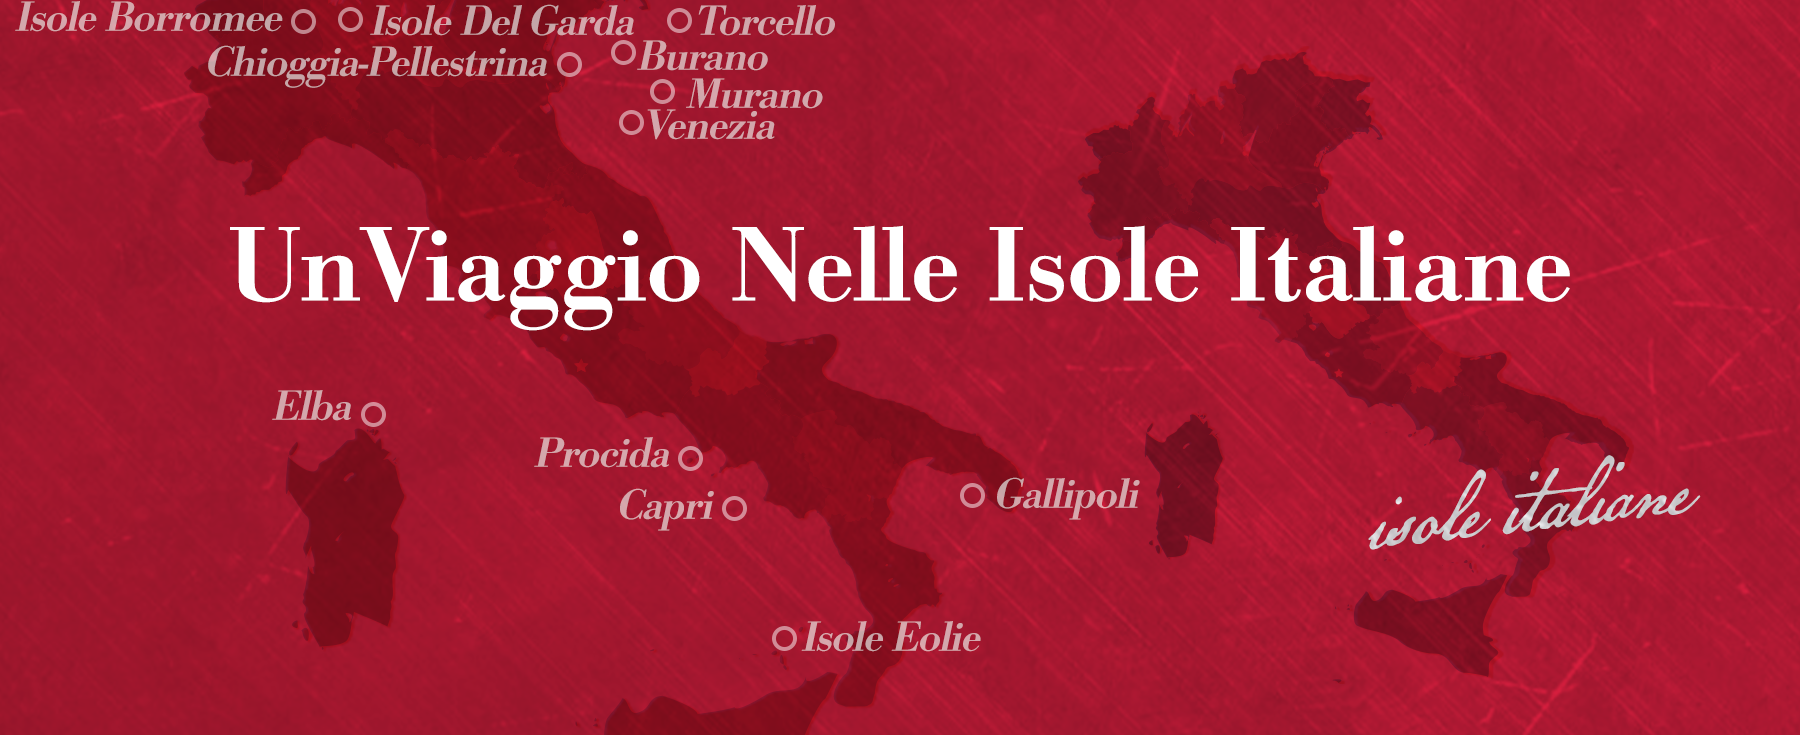 A Tour of Italy at Ristorante Bartolotta dal 1993